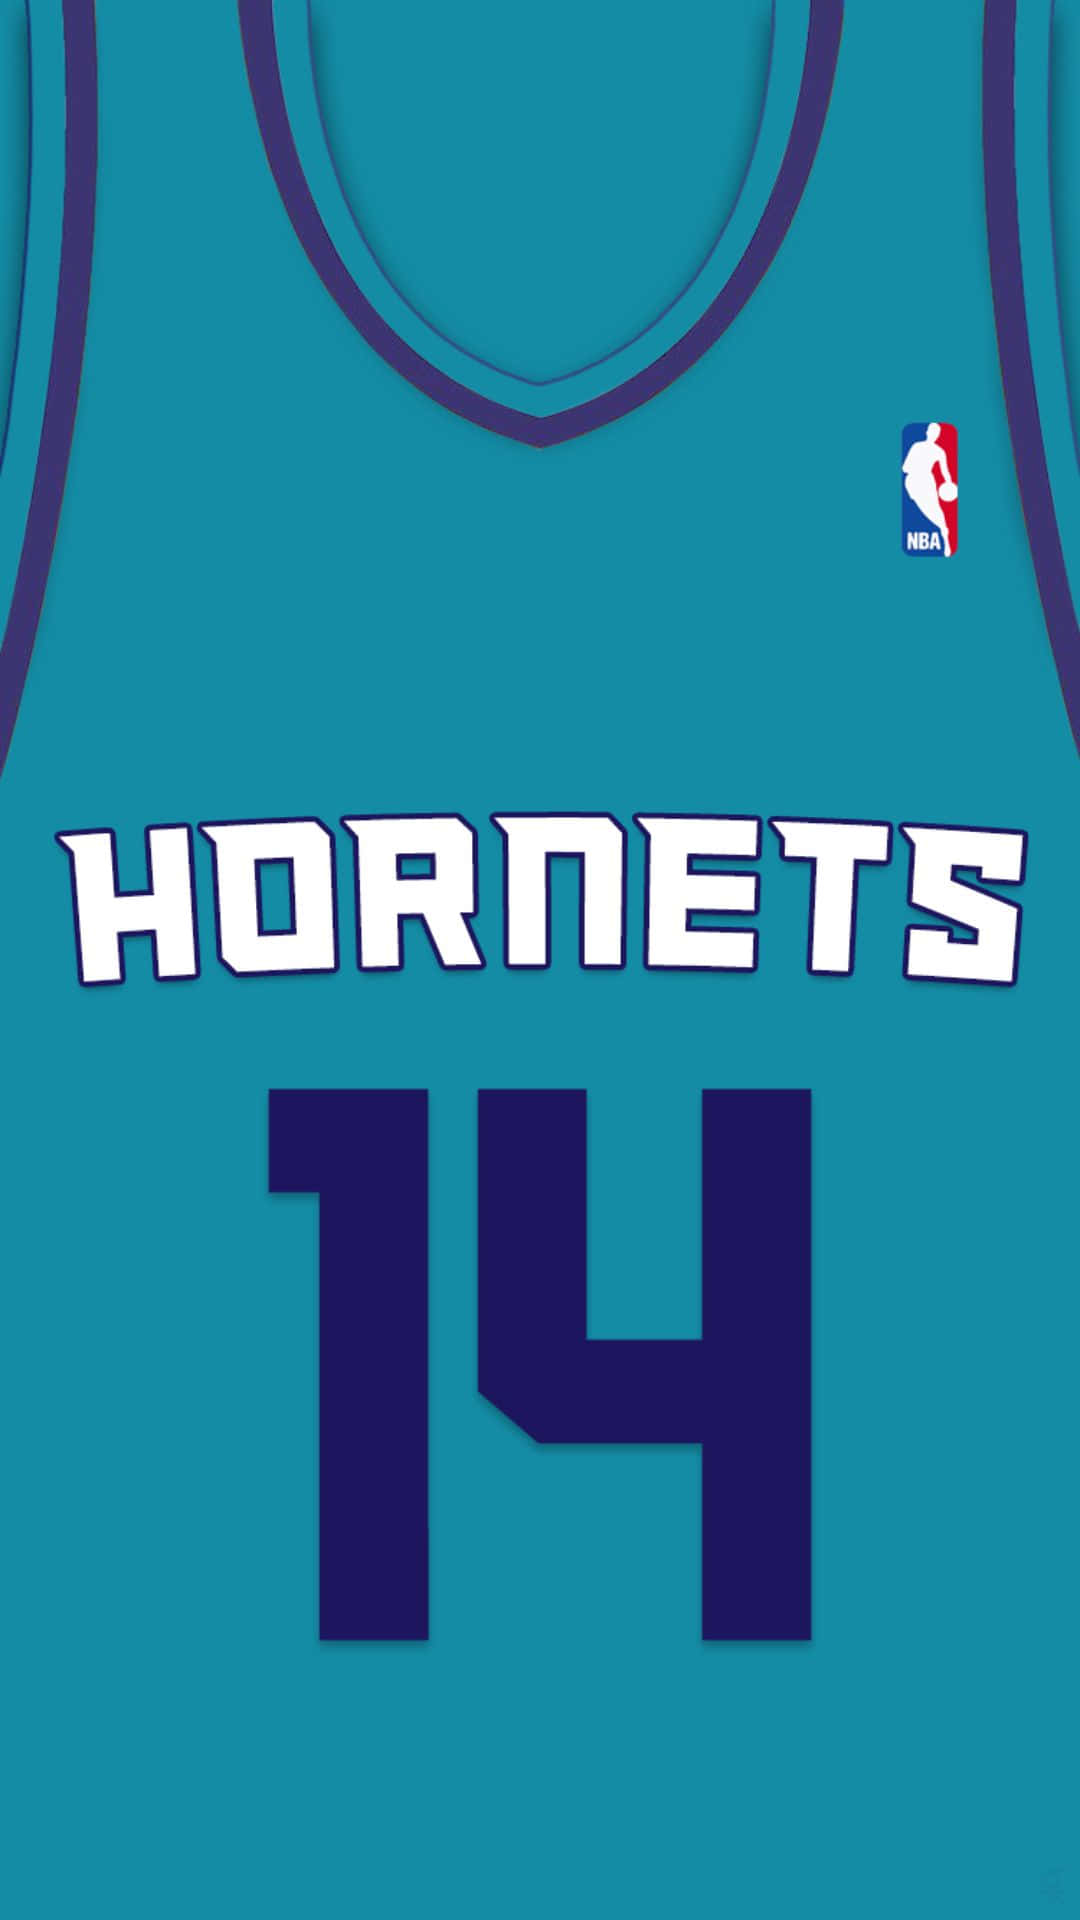 Charlotte Hornets14 N B A Jersey Wallpaper